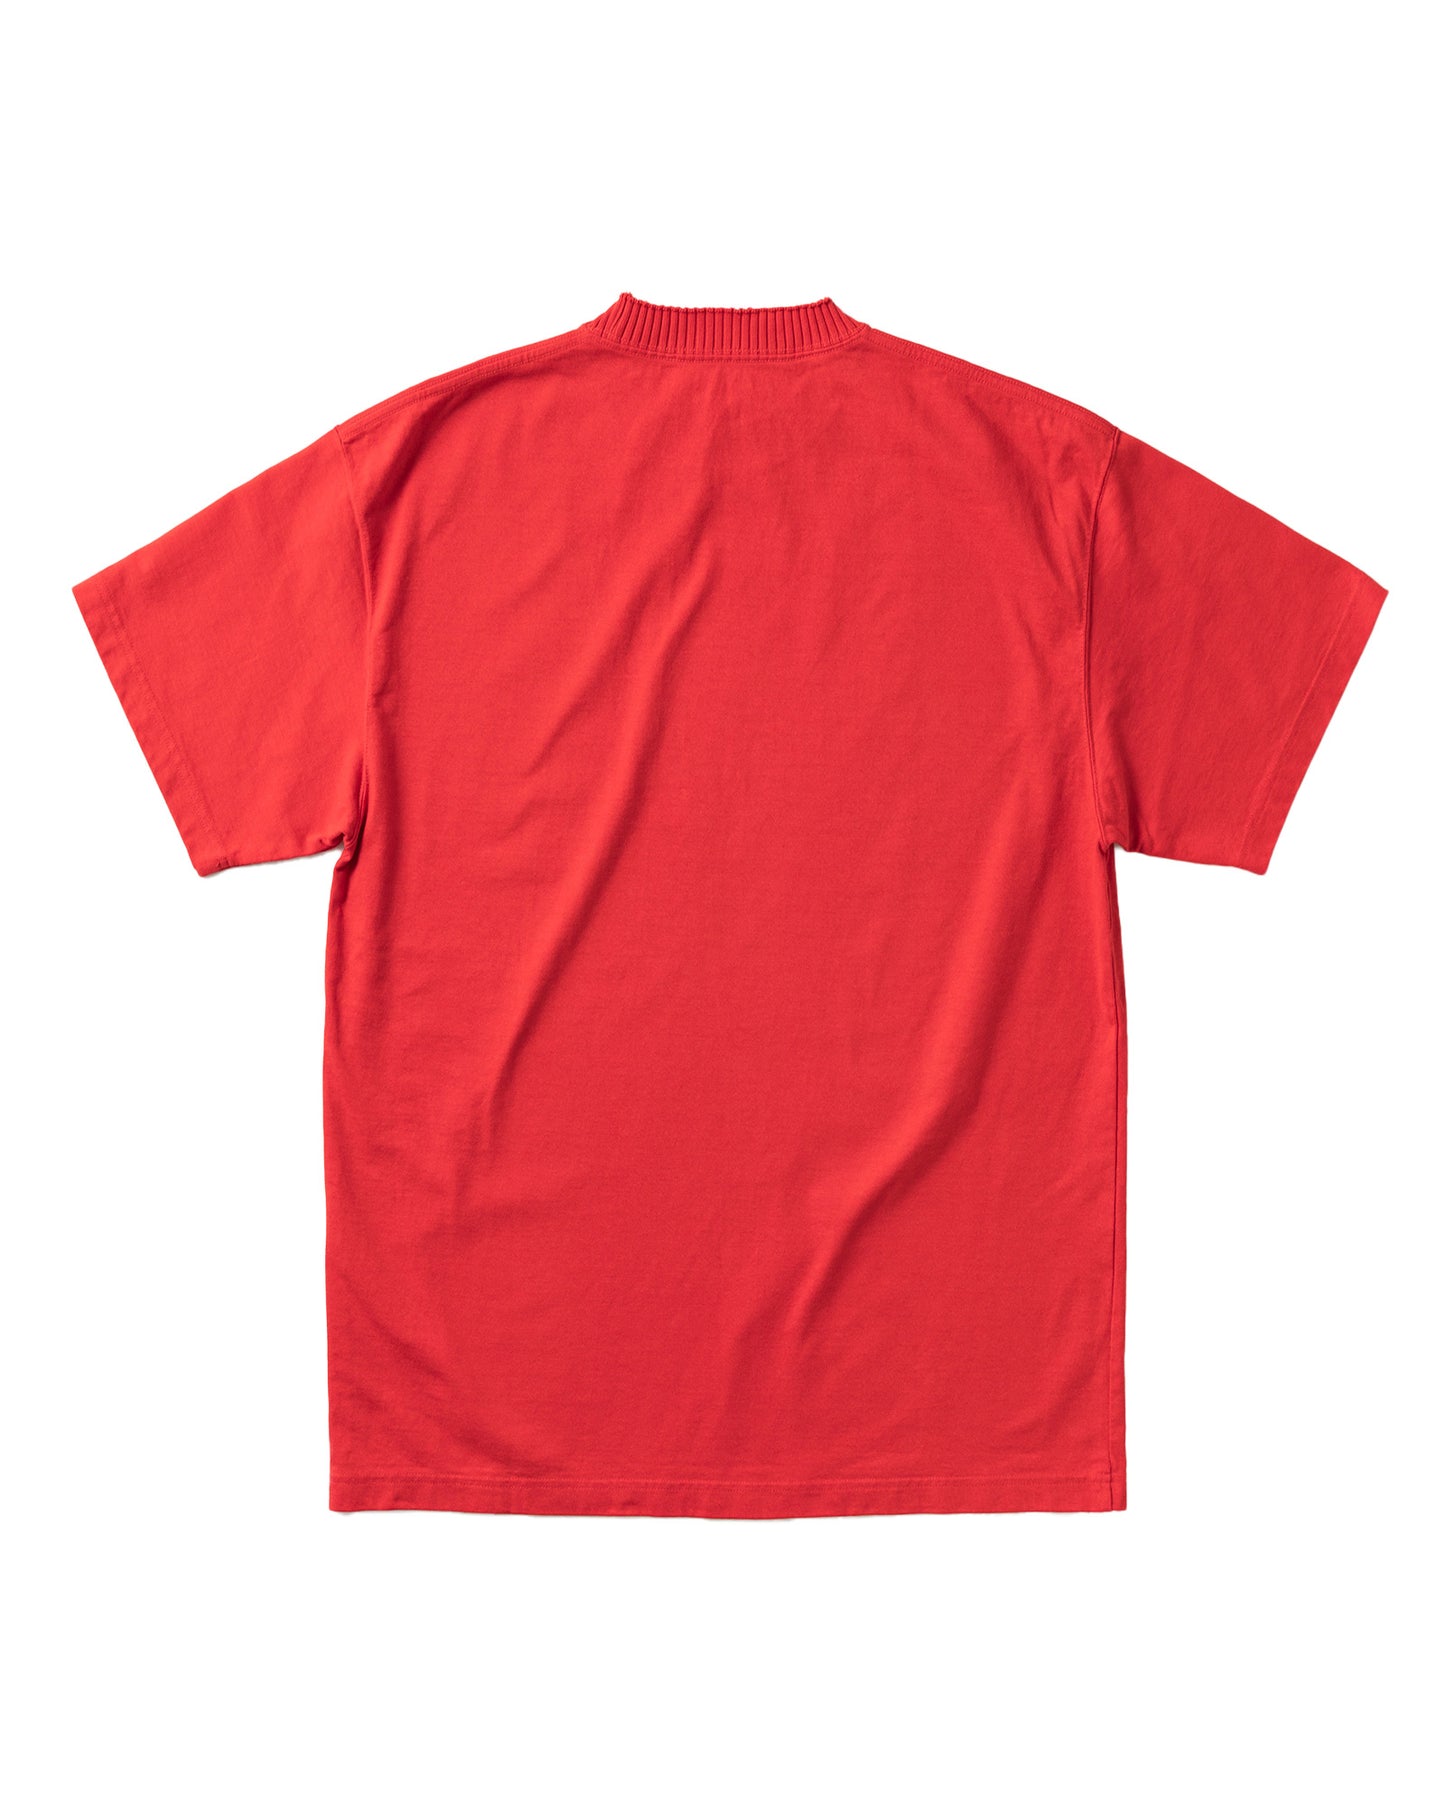 パーフェクトリブズ/Basic Short Sleeve T Shirt/Tシャツ/Red